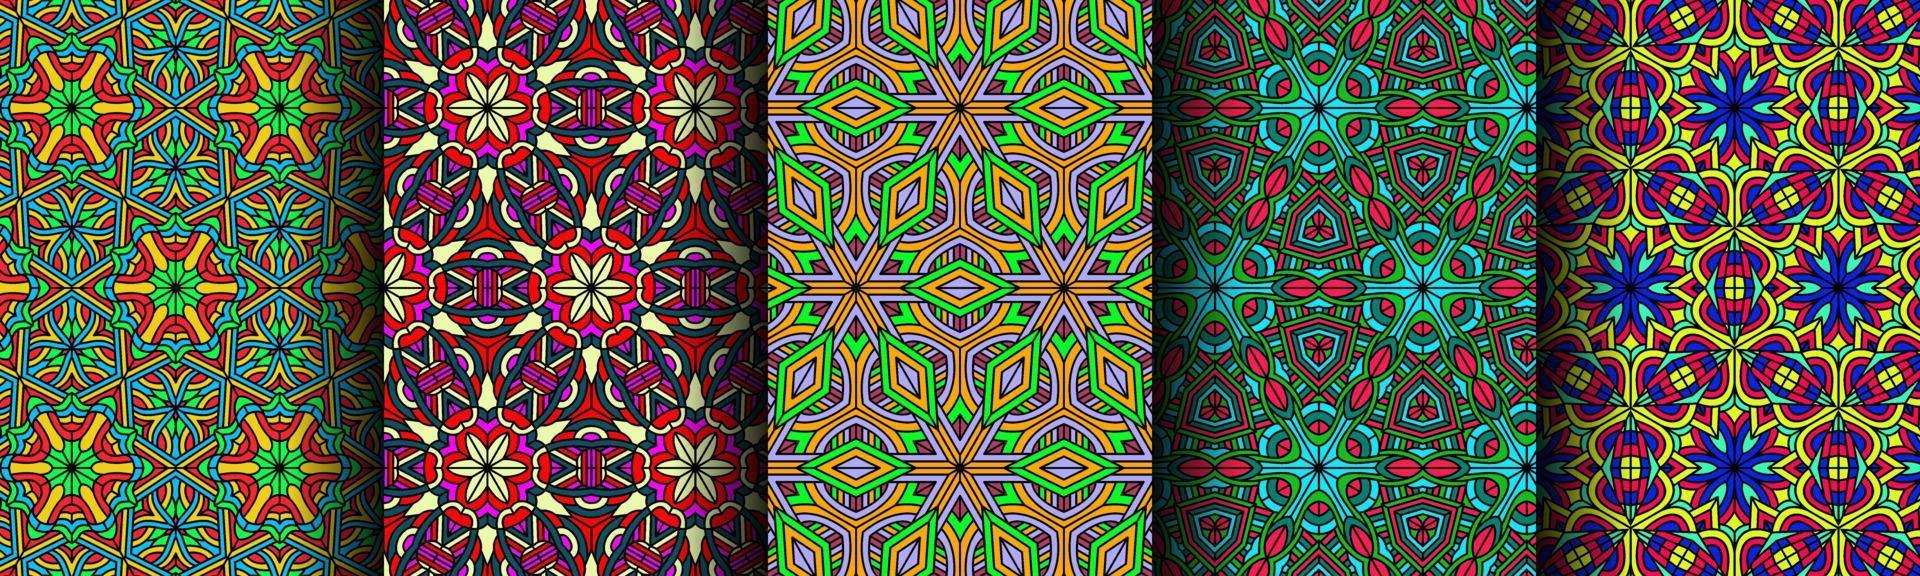 kleurrijk modern etnisch patroon verzameling bundel vector